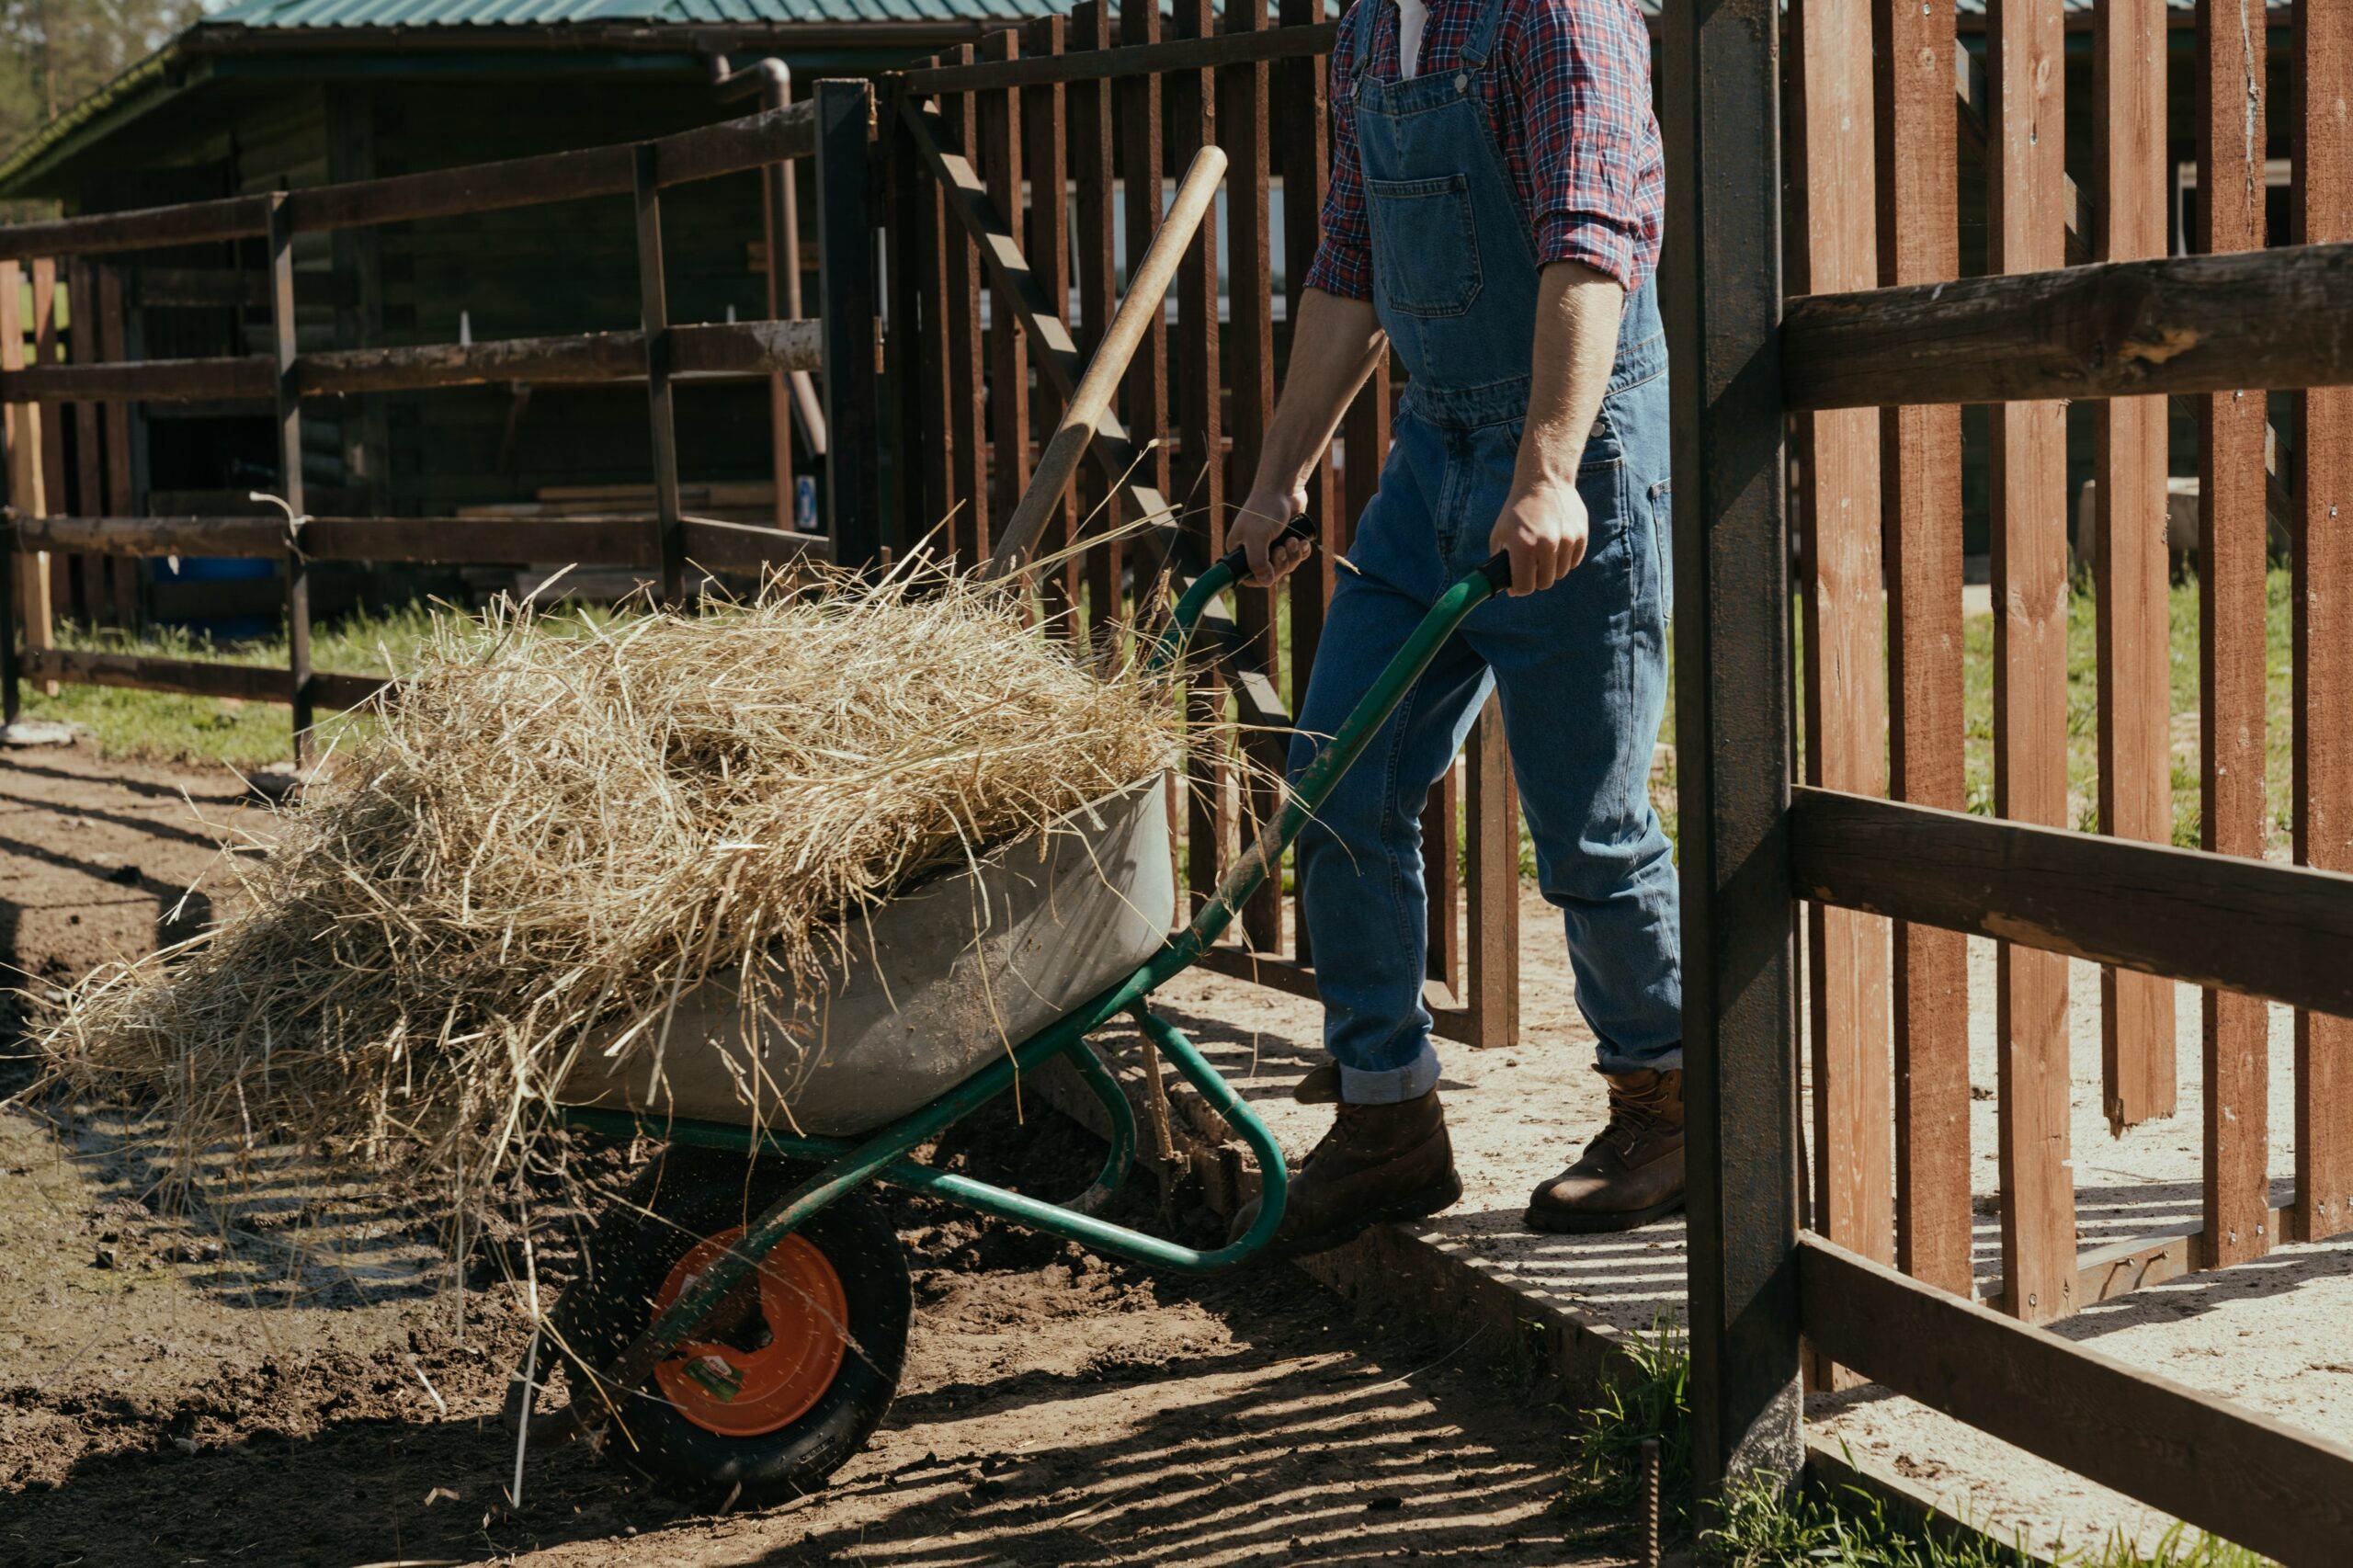 Farmer with a wheelbarrow